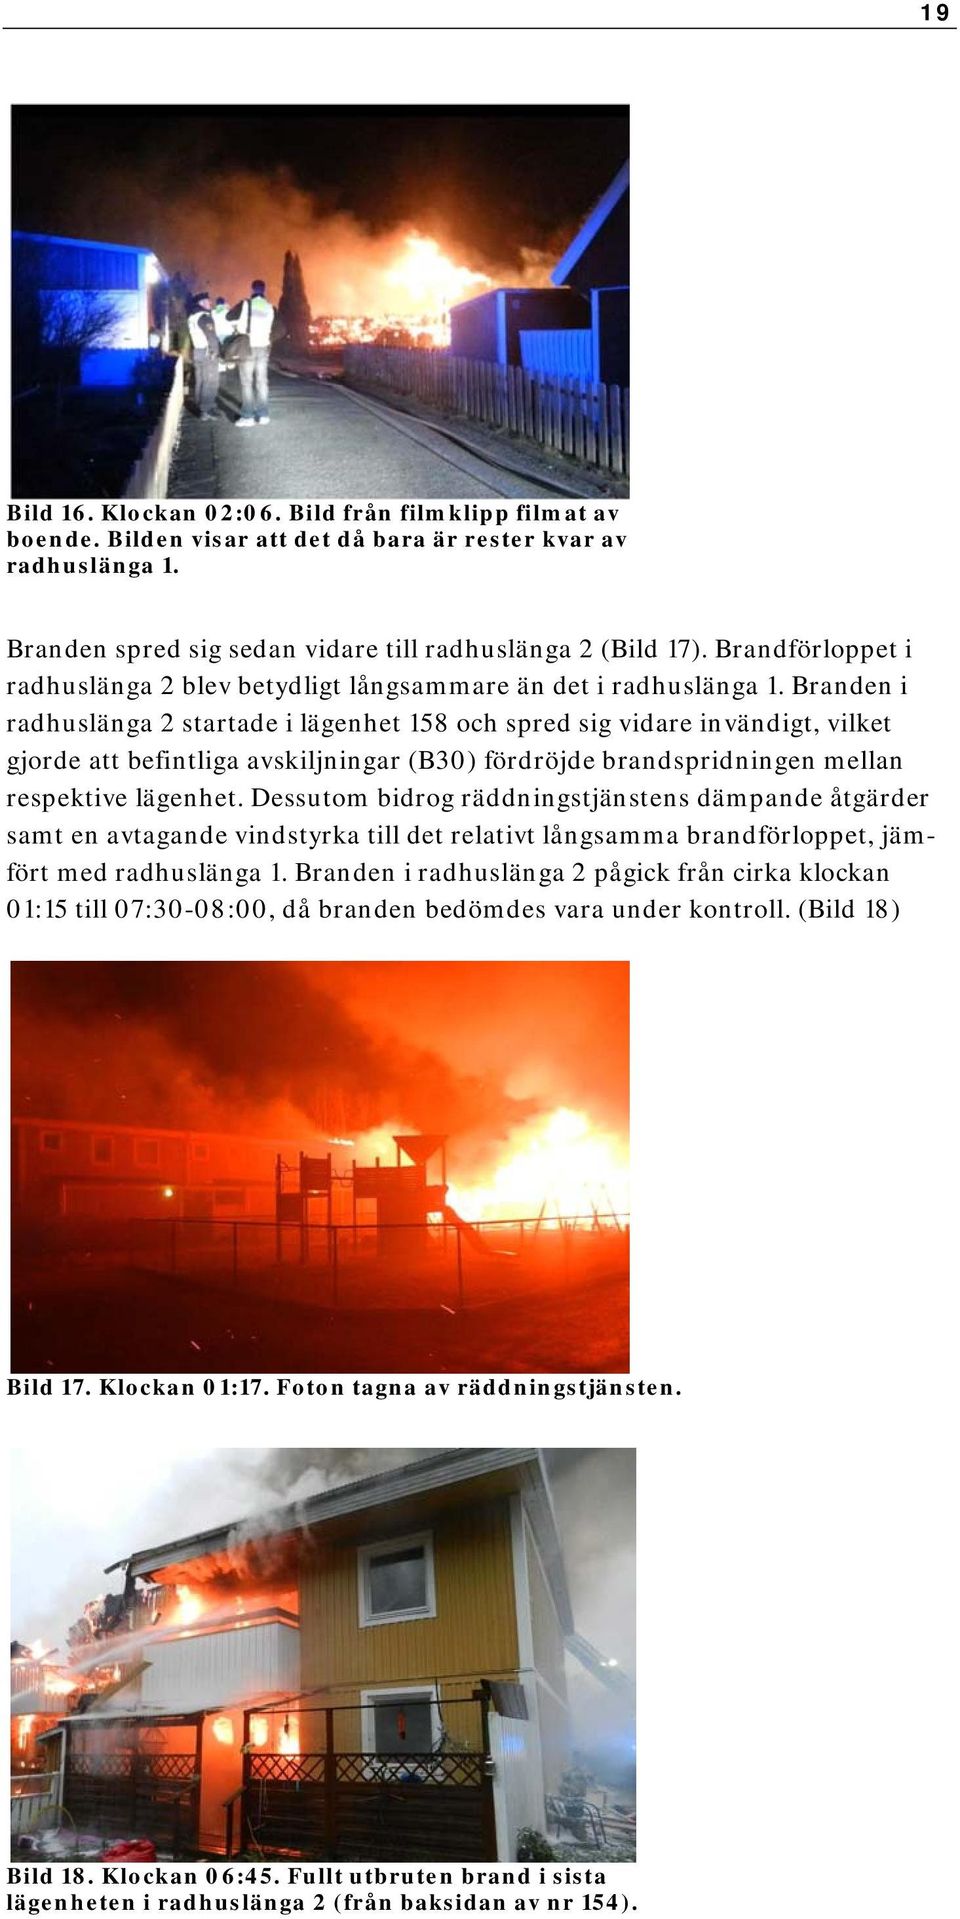 Branden i radhuslänga 2 startade i lägenhet 158 och spred sig vidare invändigt, vilket gjorde att befintliga avskiljningar (B30) fördröjde brandspridningen mellan respektive lägenhet.